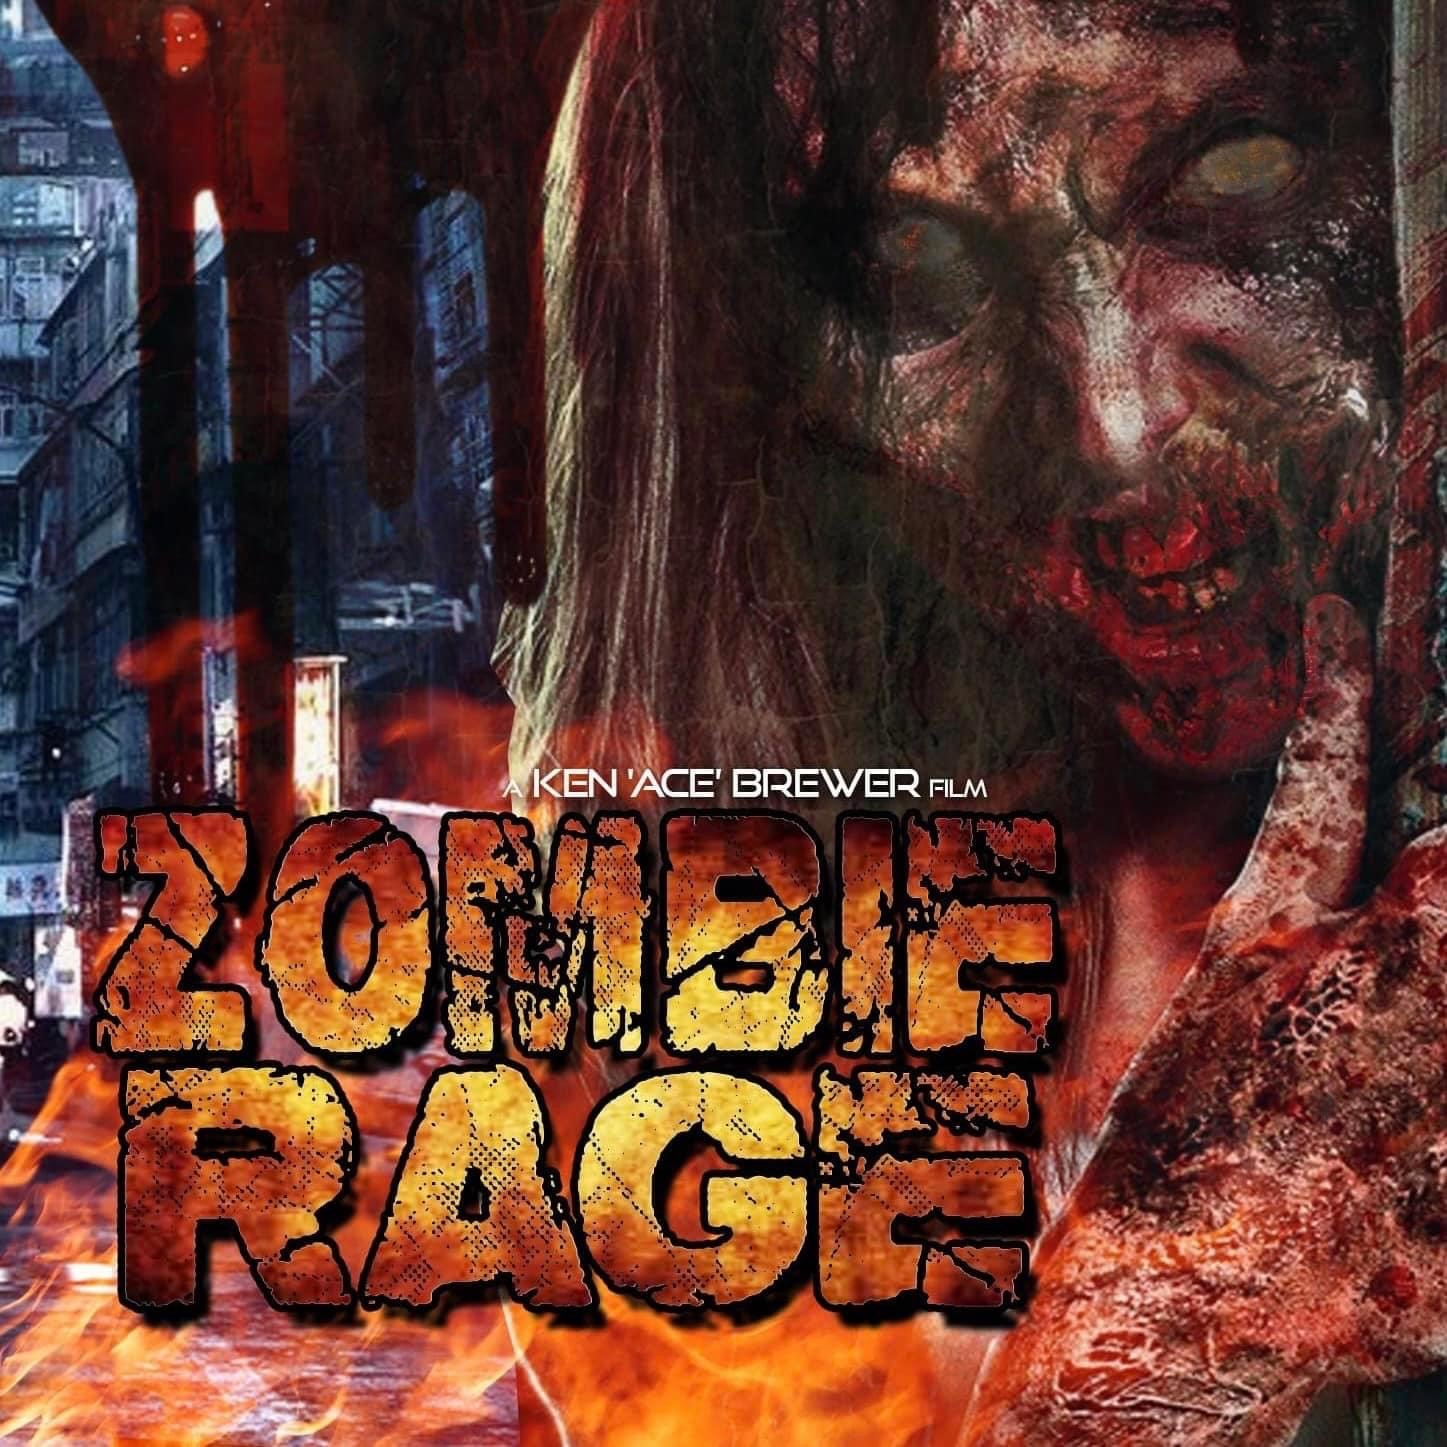 Zombie Rage